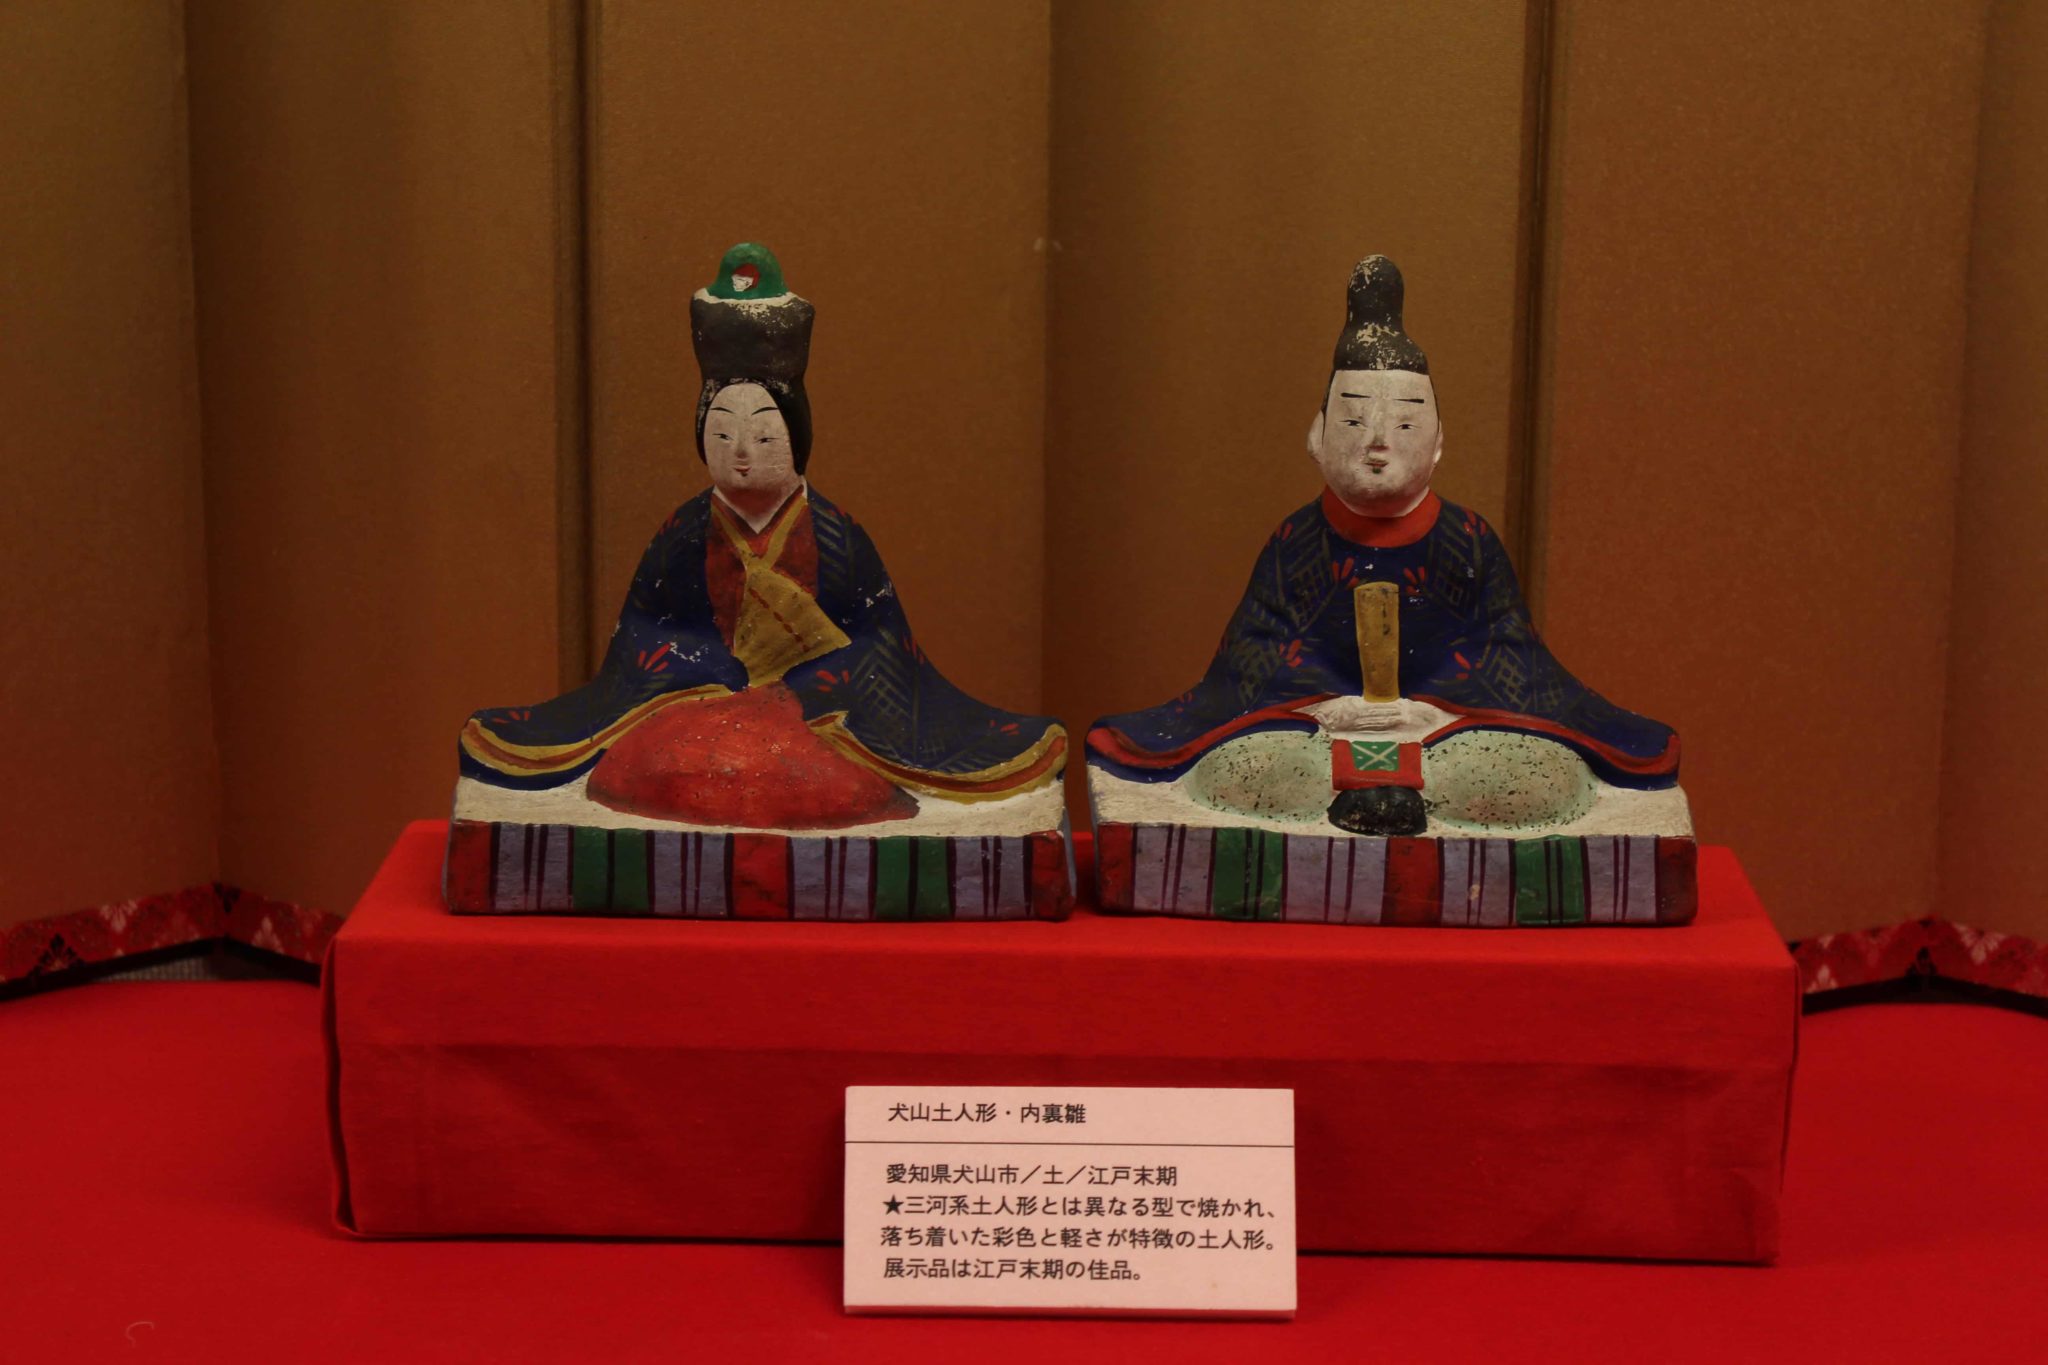 「犬山土人形・内裏雛」 | 日本玩具博物館